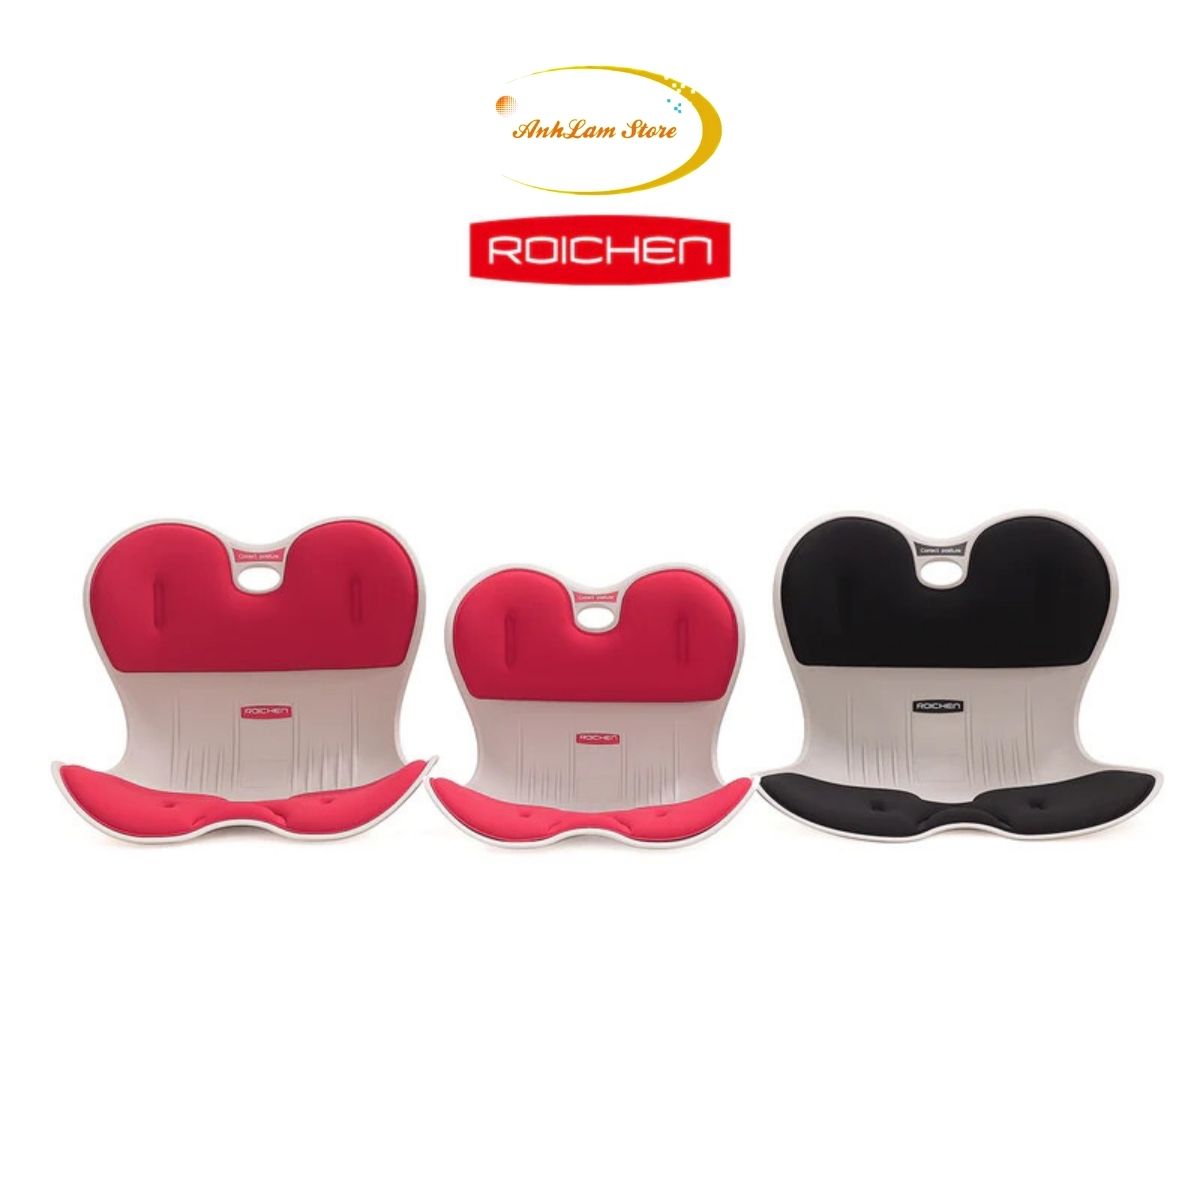 Ghế chỉnh dáng ngồi đúng cả gia đình hàng chính hãng Roichen nhập khẩu Hàn Quốc